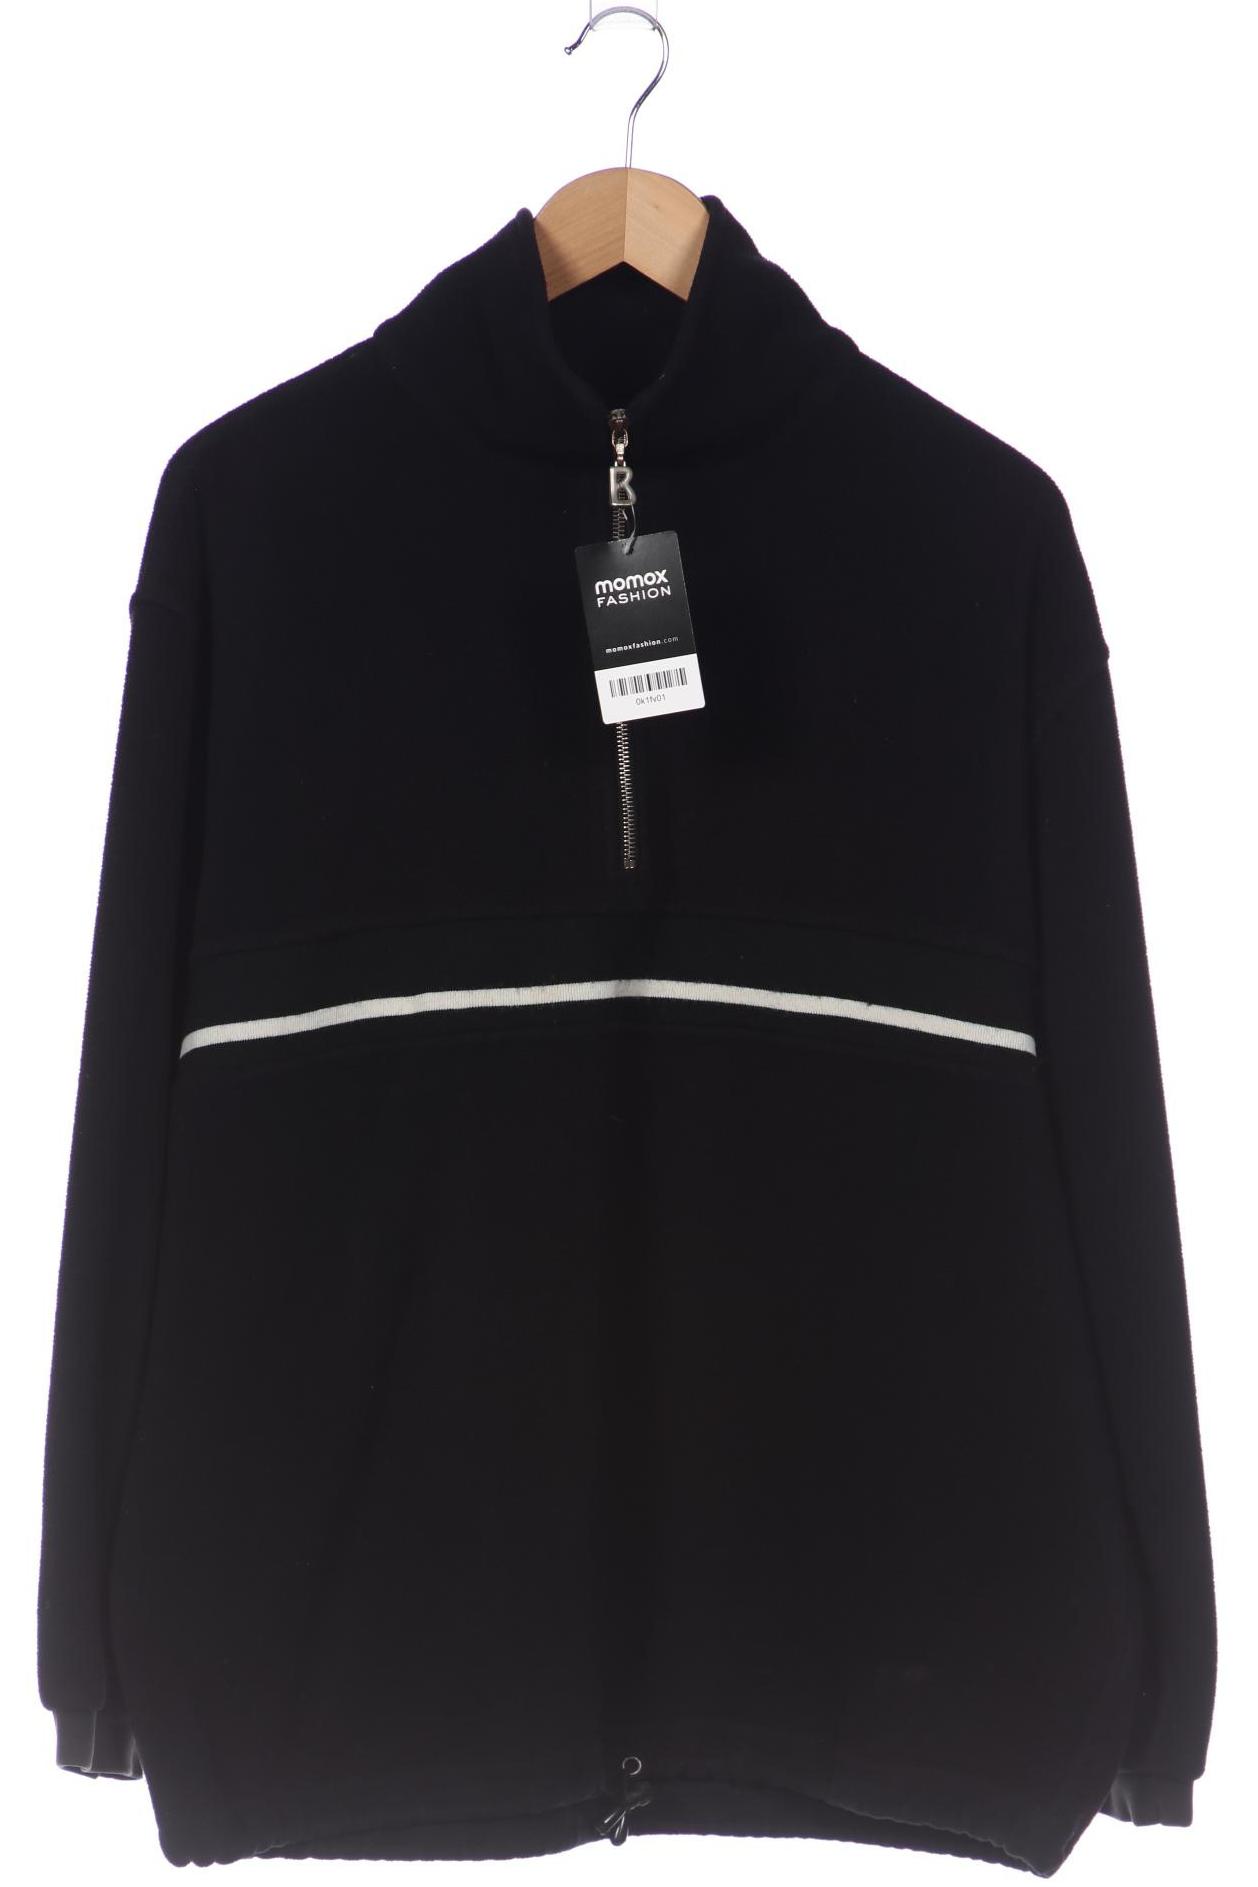 Bogner Damen Sweatshirt, schwarz, Gr. 42 von Bogner